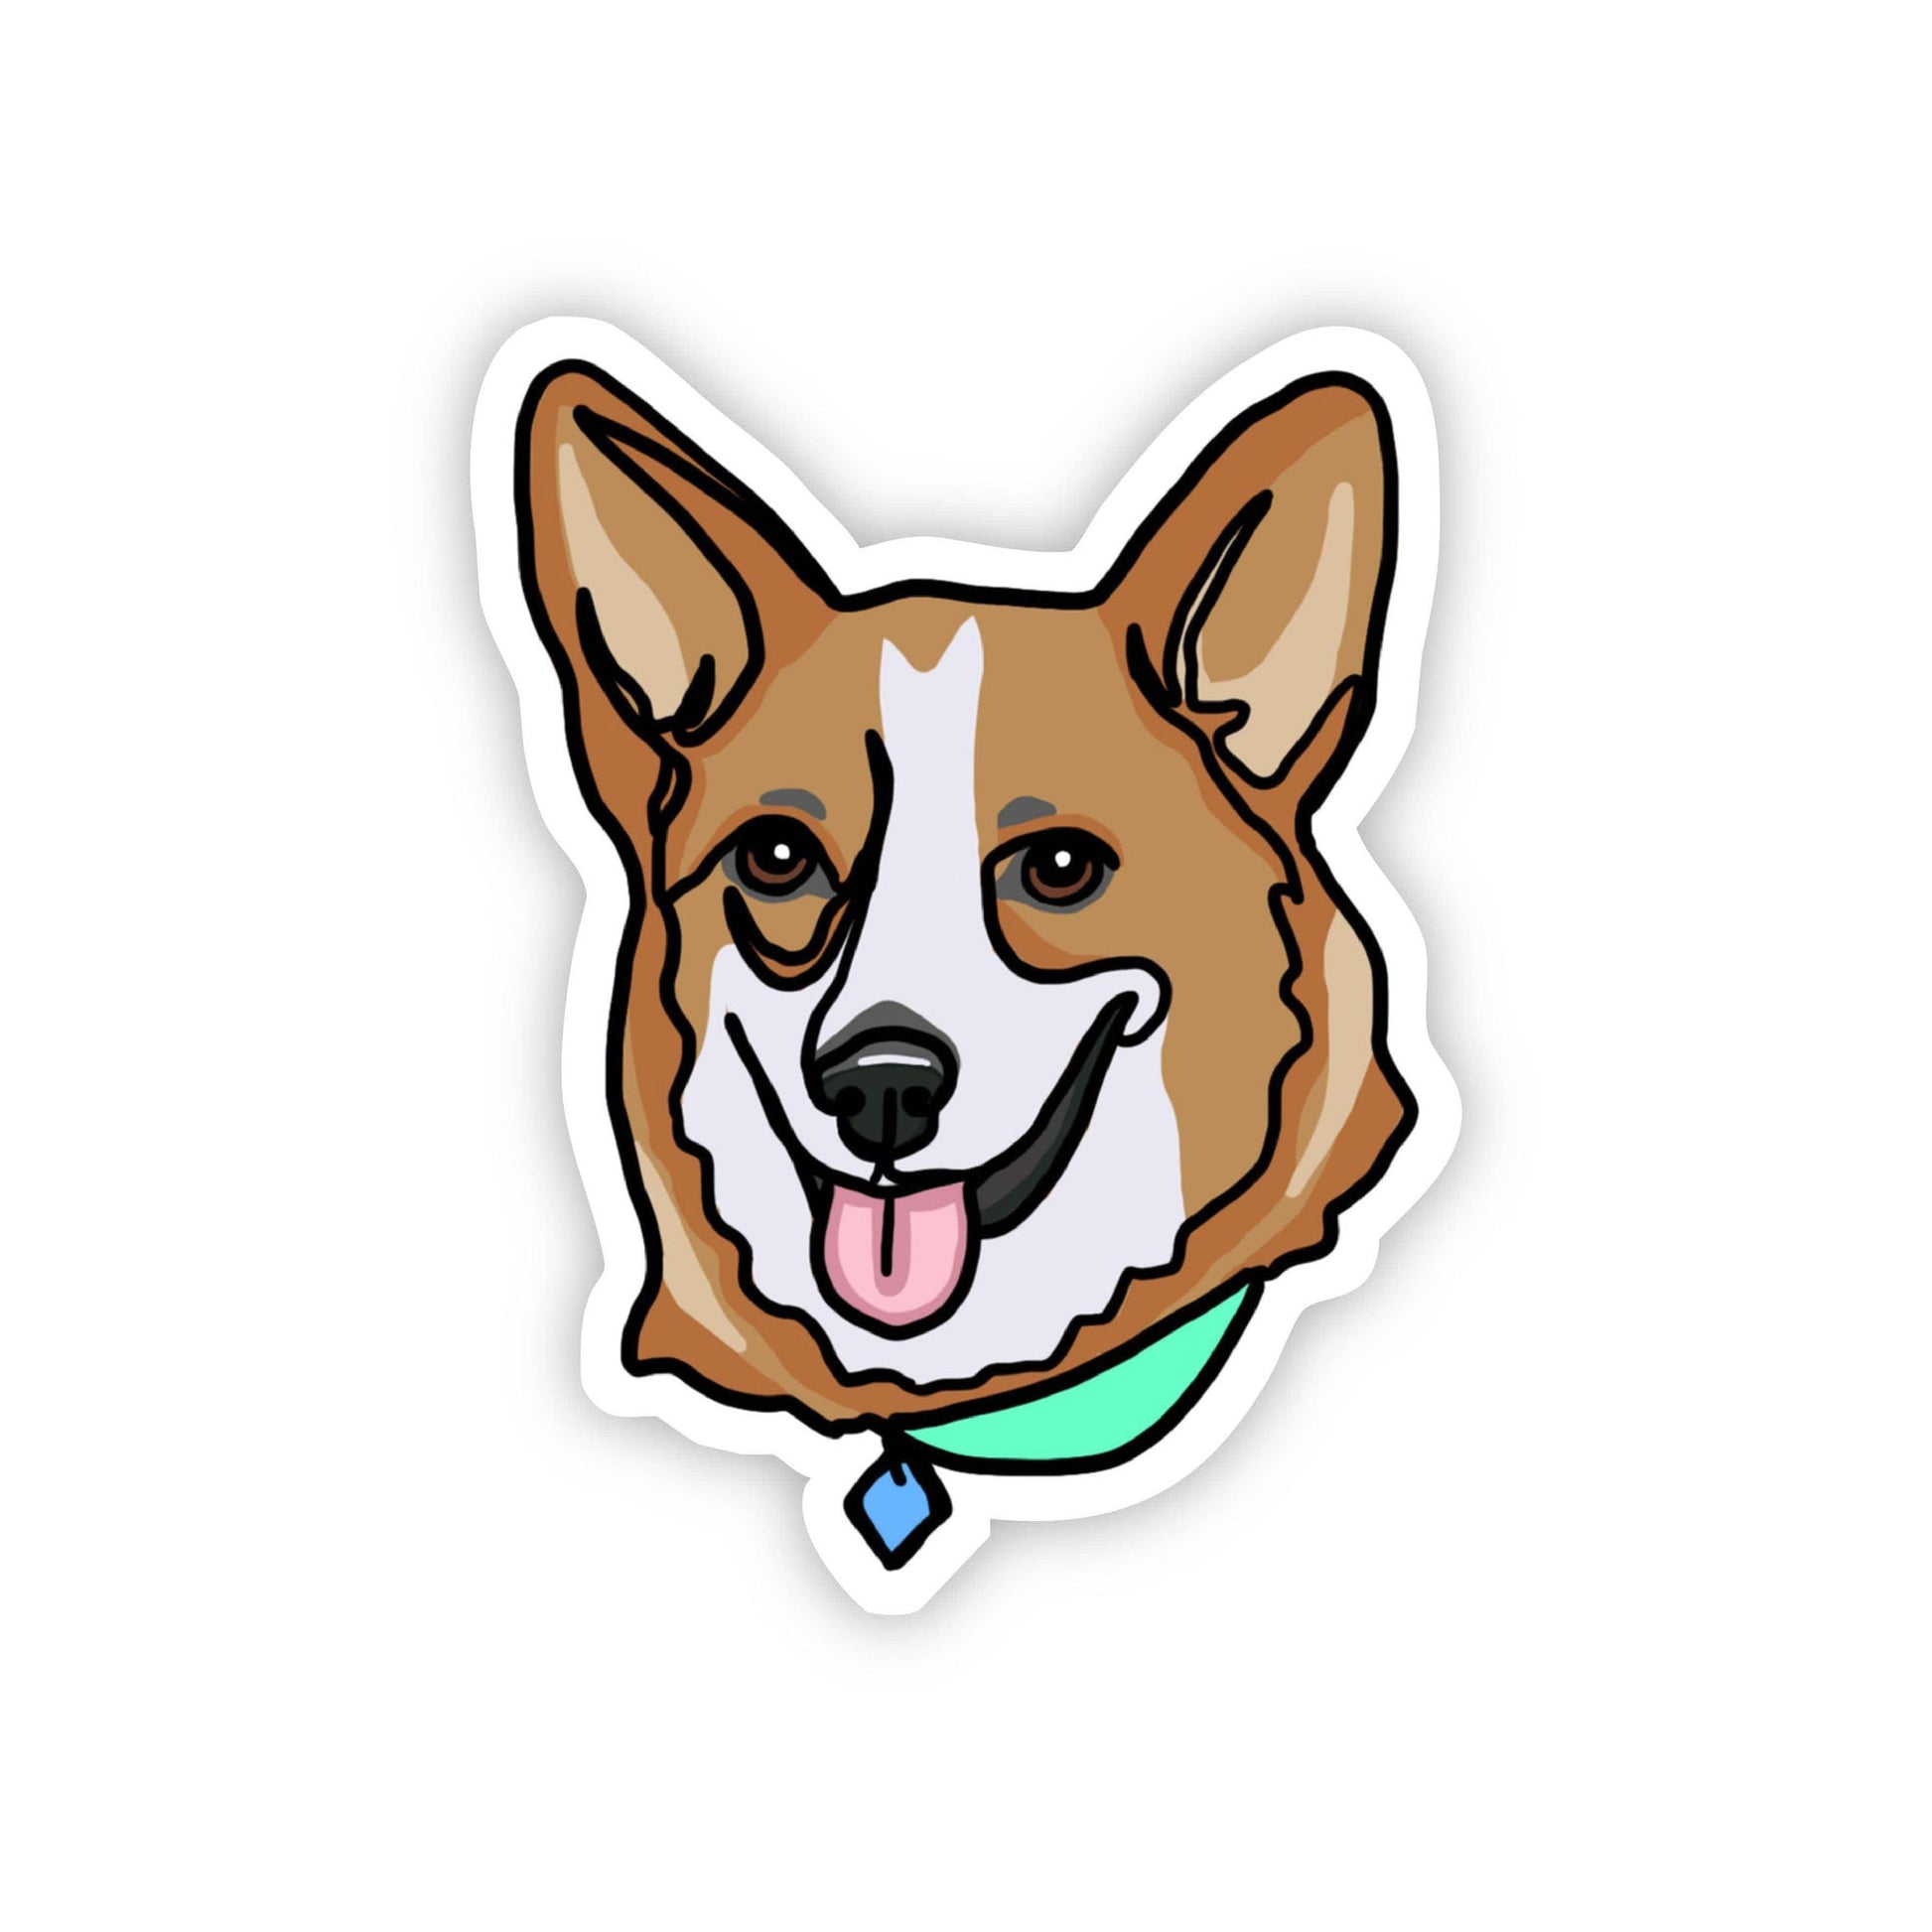 Big Moods Dog Sticker - Corgi